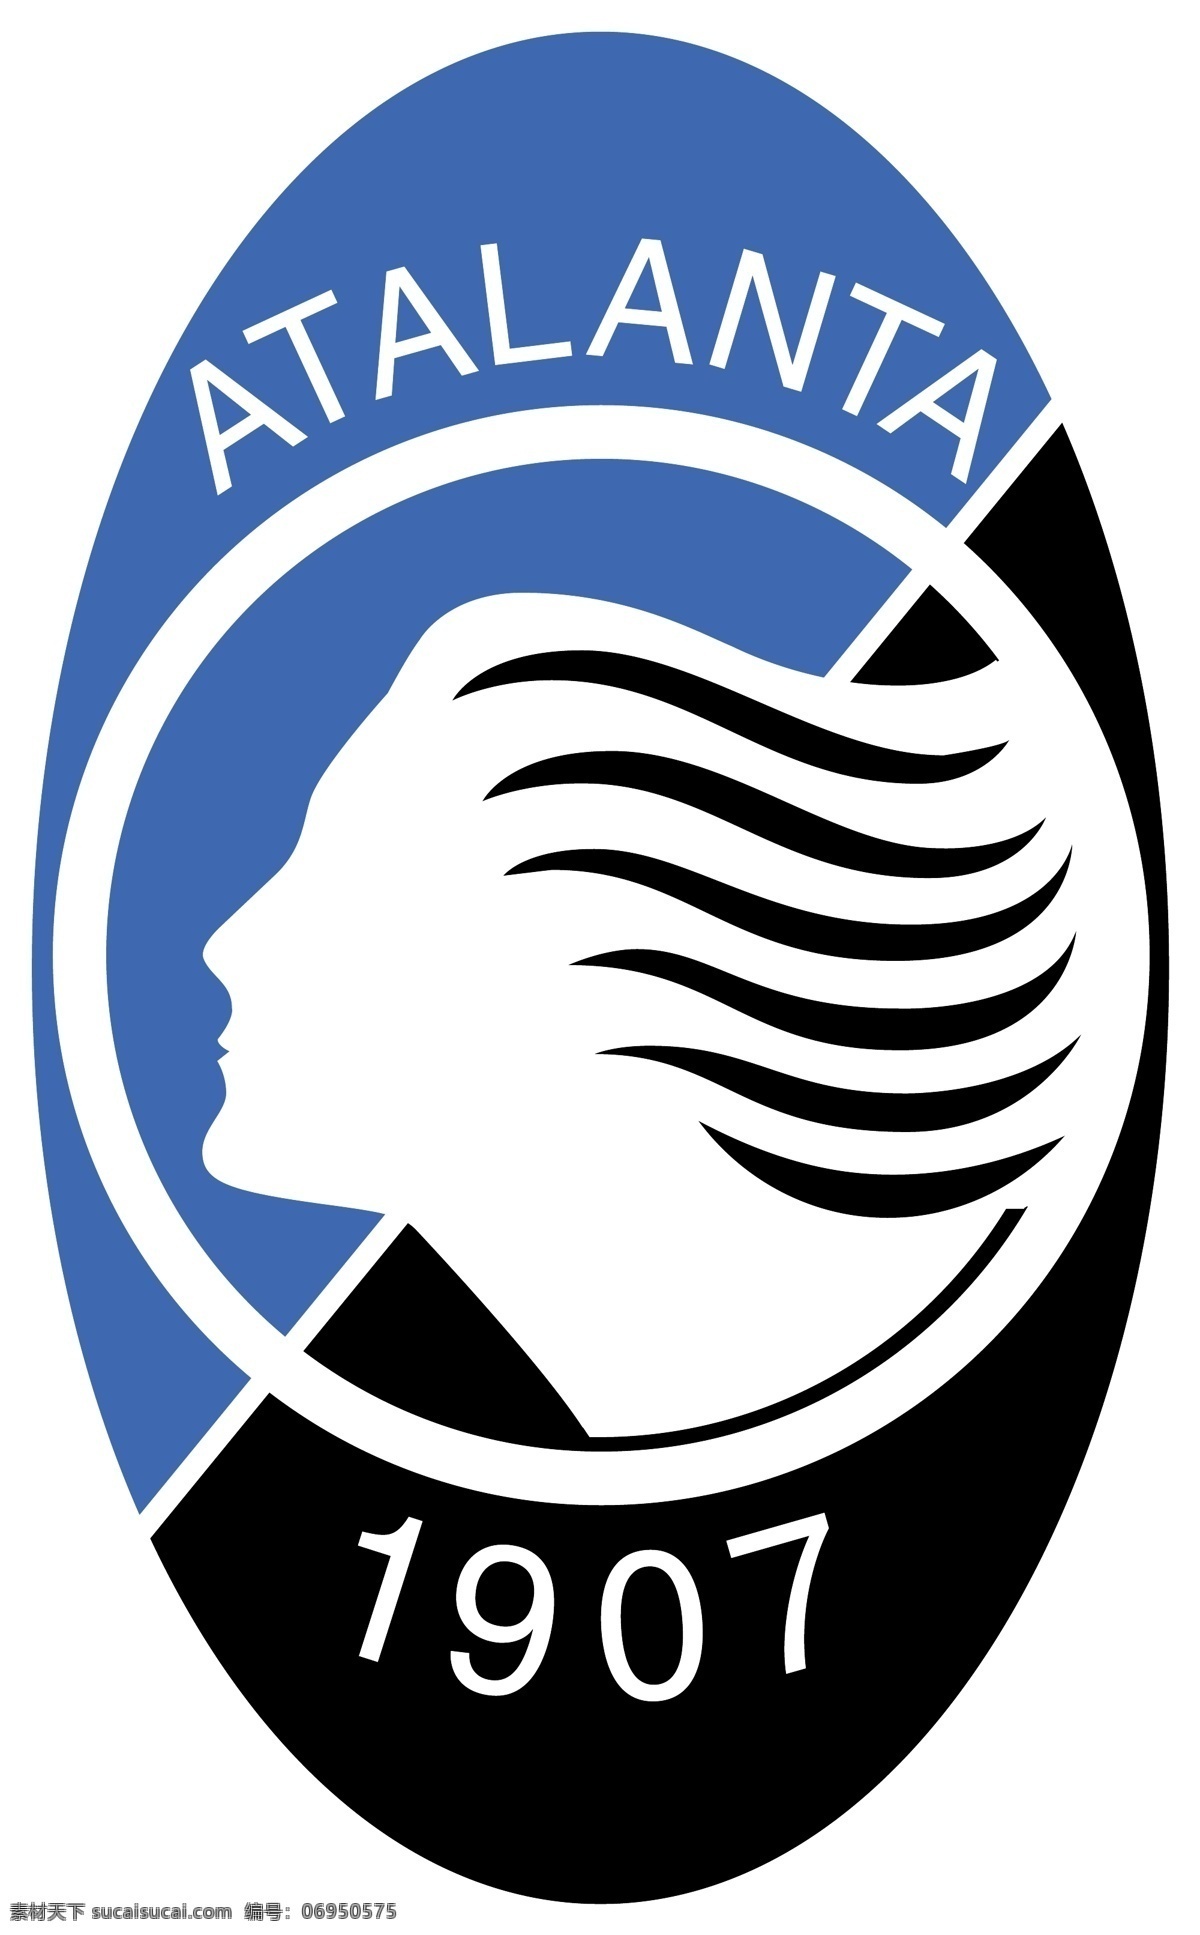 亚特兰大 足球 俱乐部 徽标 logo设计 比赛 意大利 意甲 甲级 联赛 矢量图